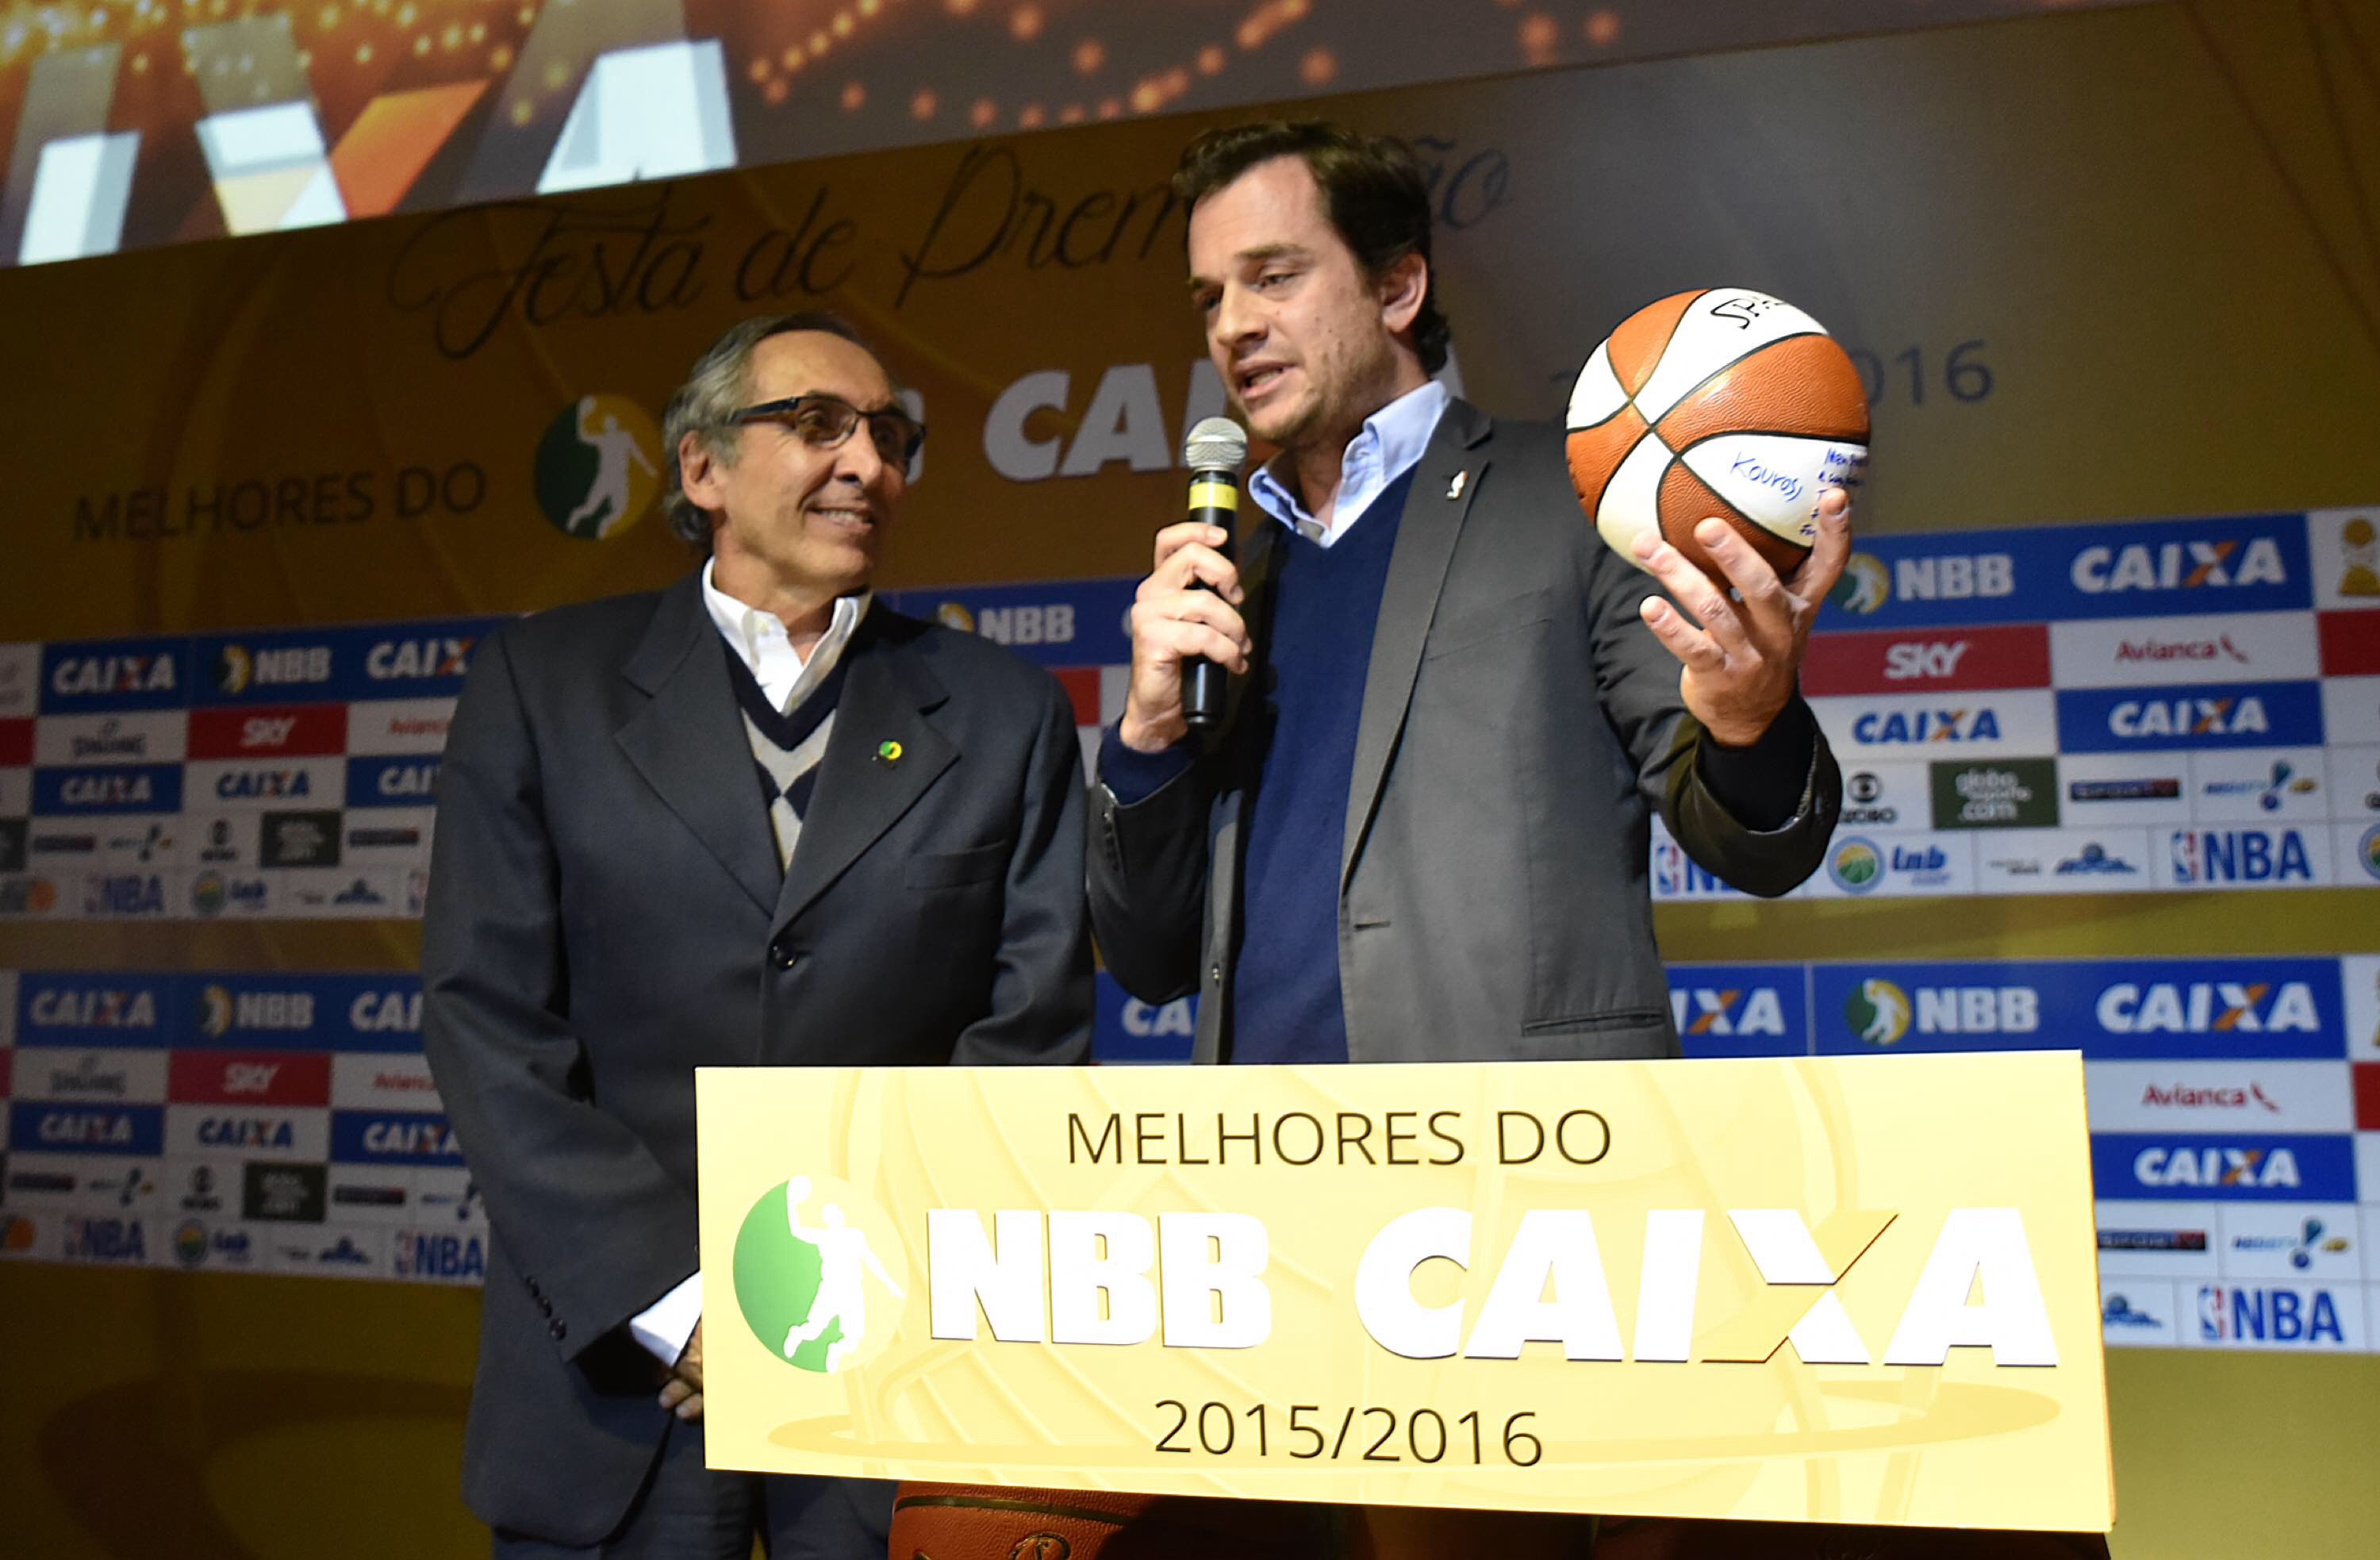 Arnon de Mello presenteia Kouros com a bola das finais da NBA, durante cerimônia de Premiação dos Melhores do NBB CAIXA 15/16.